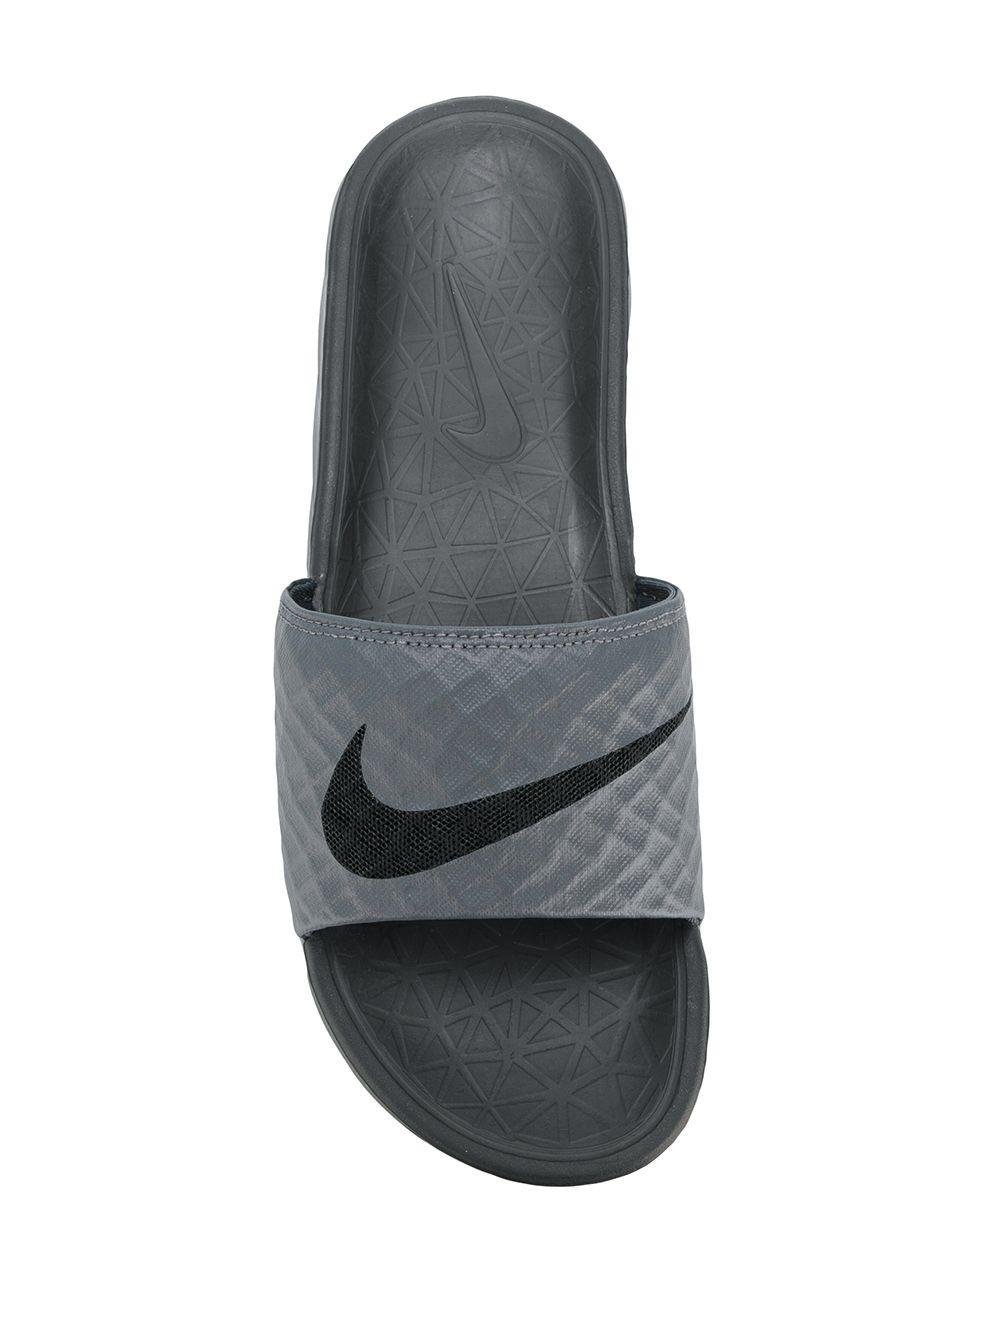 Nike Benassi Slides In Gray For Men Lyst